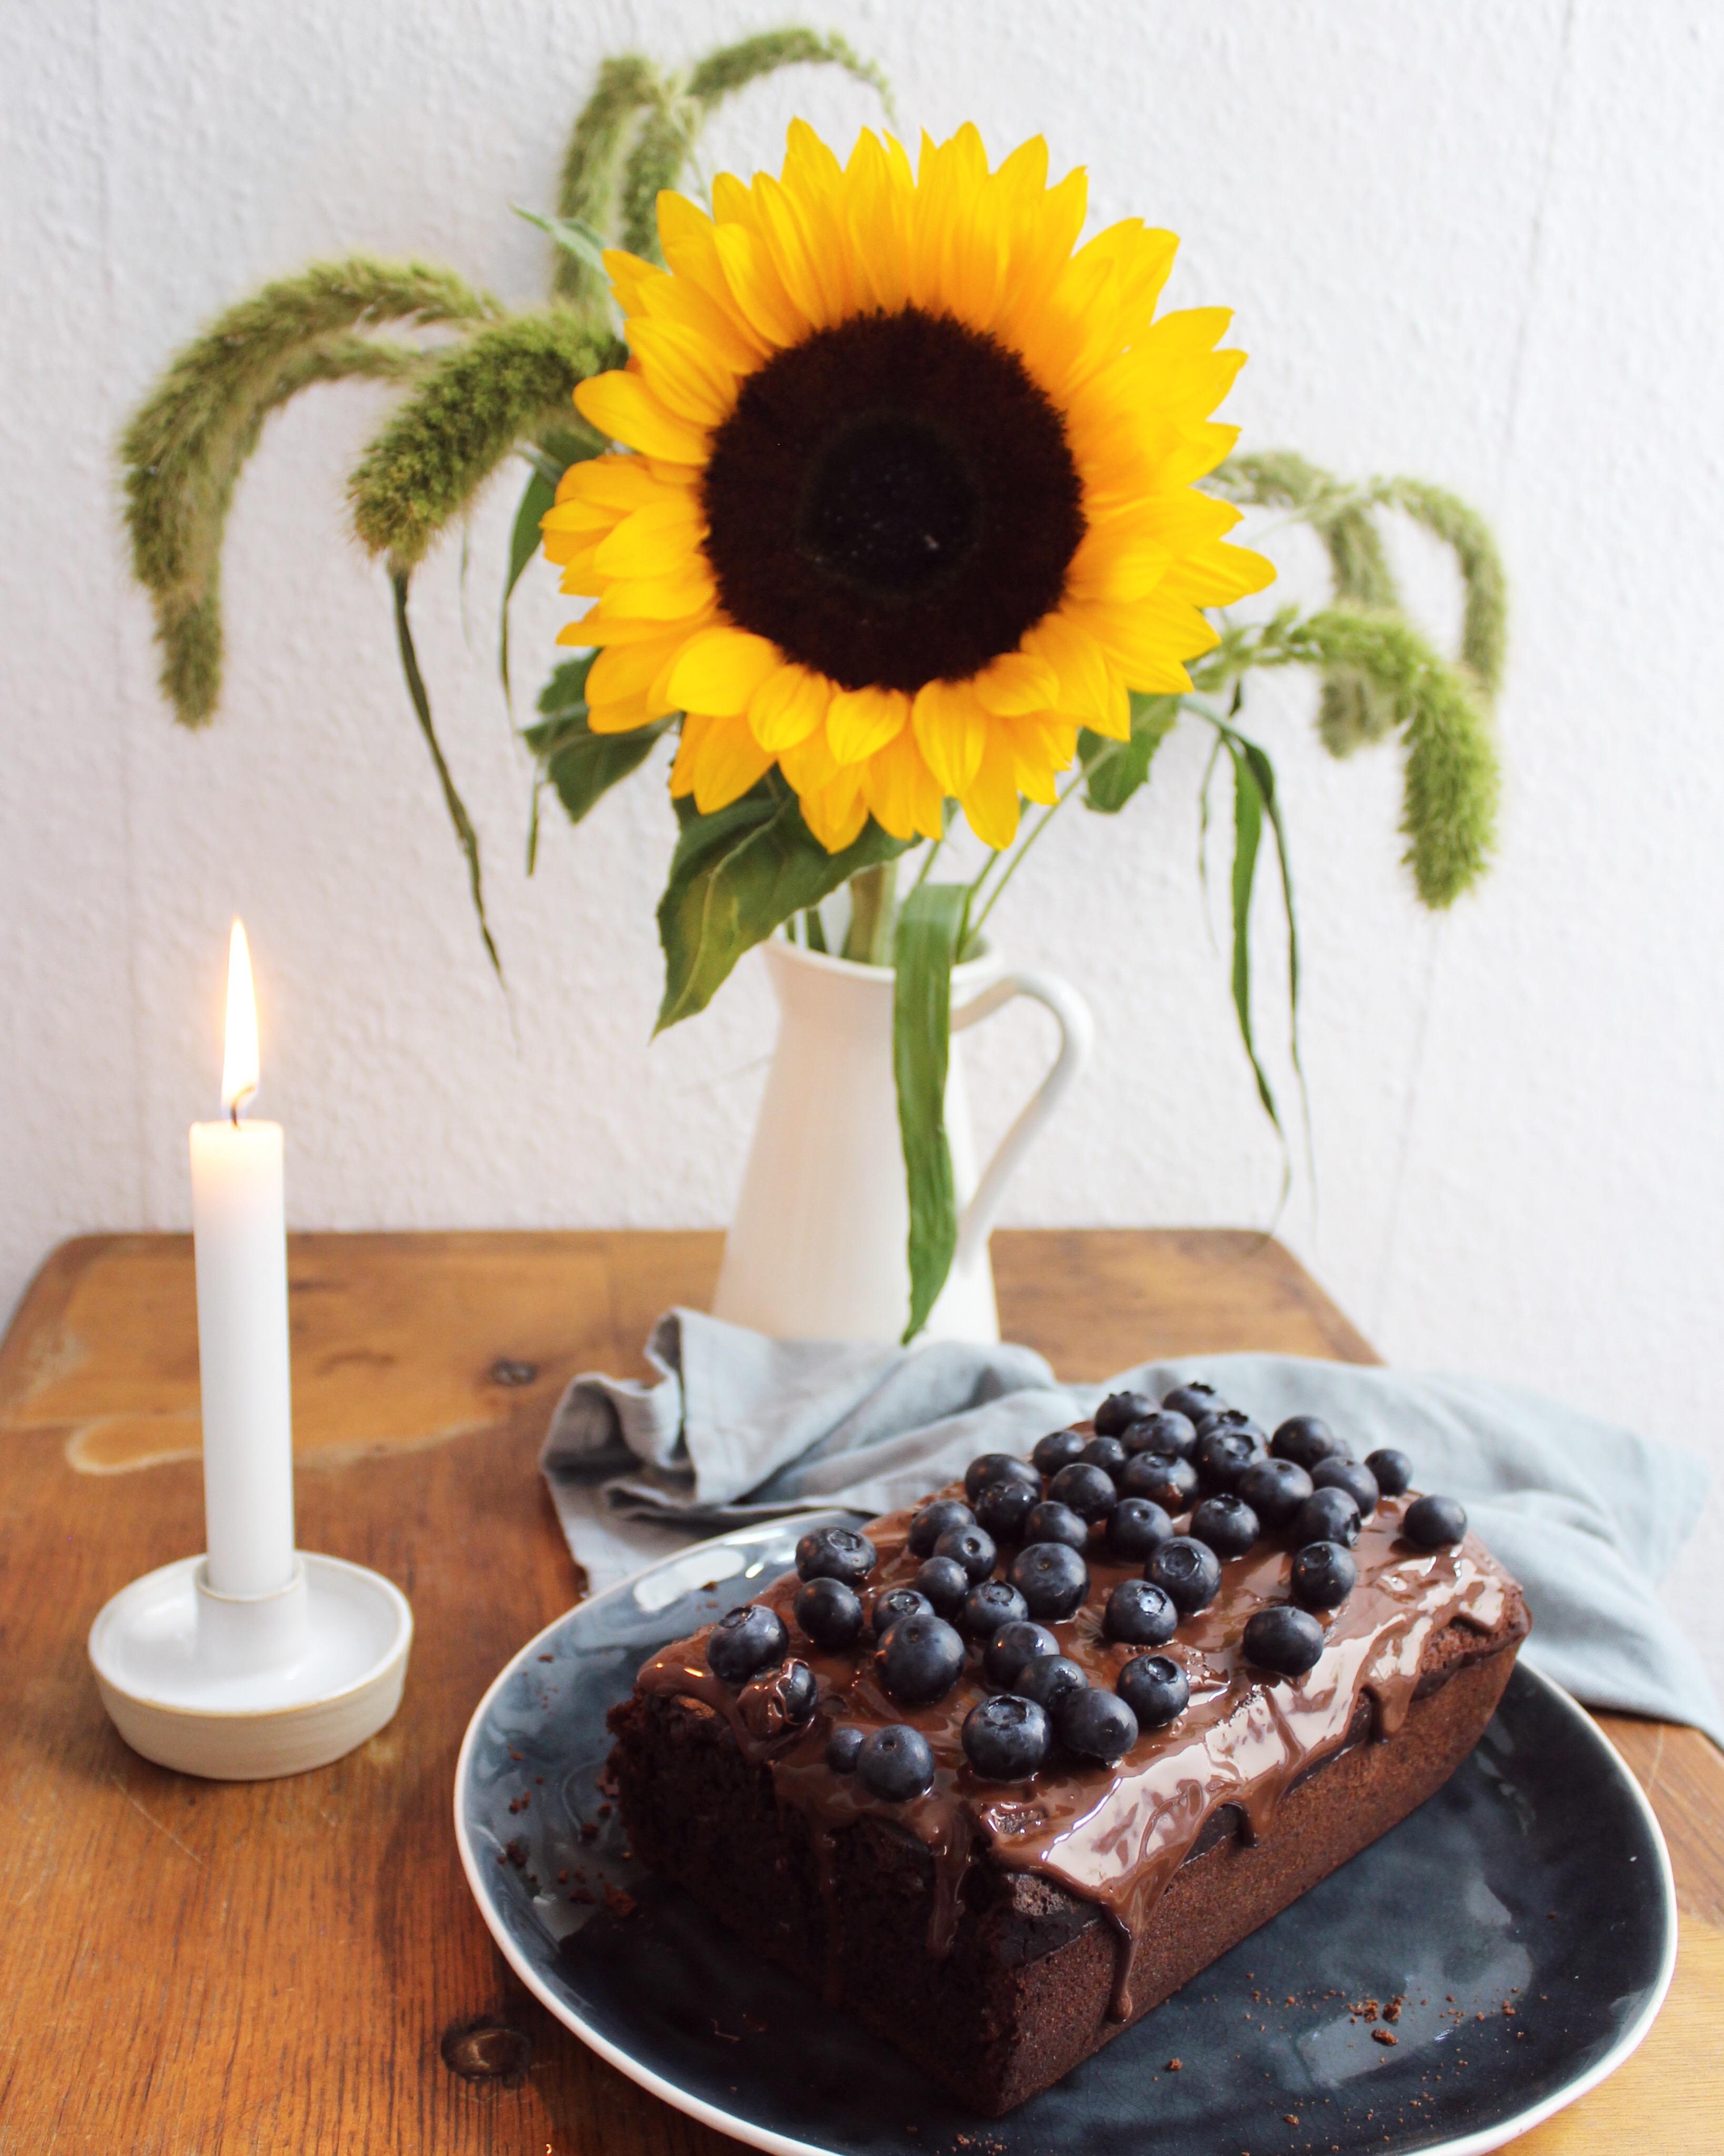 Zu meinem Einzug gab's Kuchen für die Nachbarn und Blumen für mich :p #Sonnenblume #Kuchenliebe #interior #küche